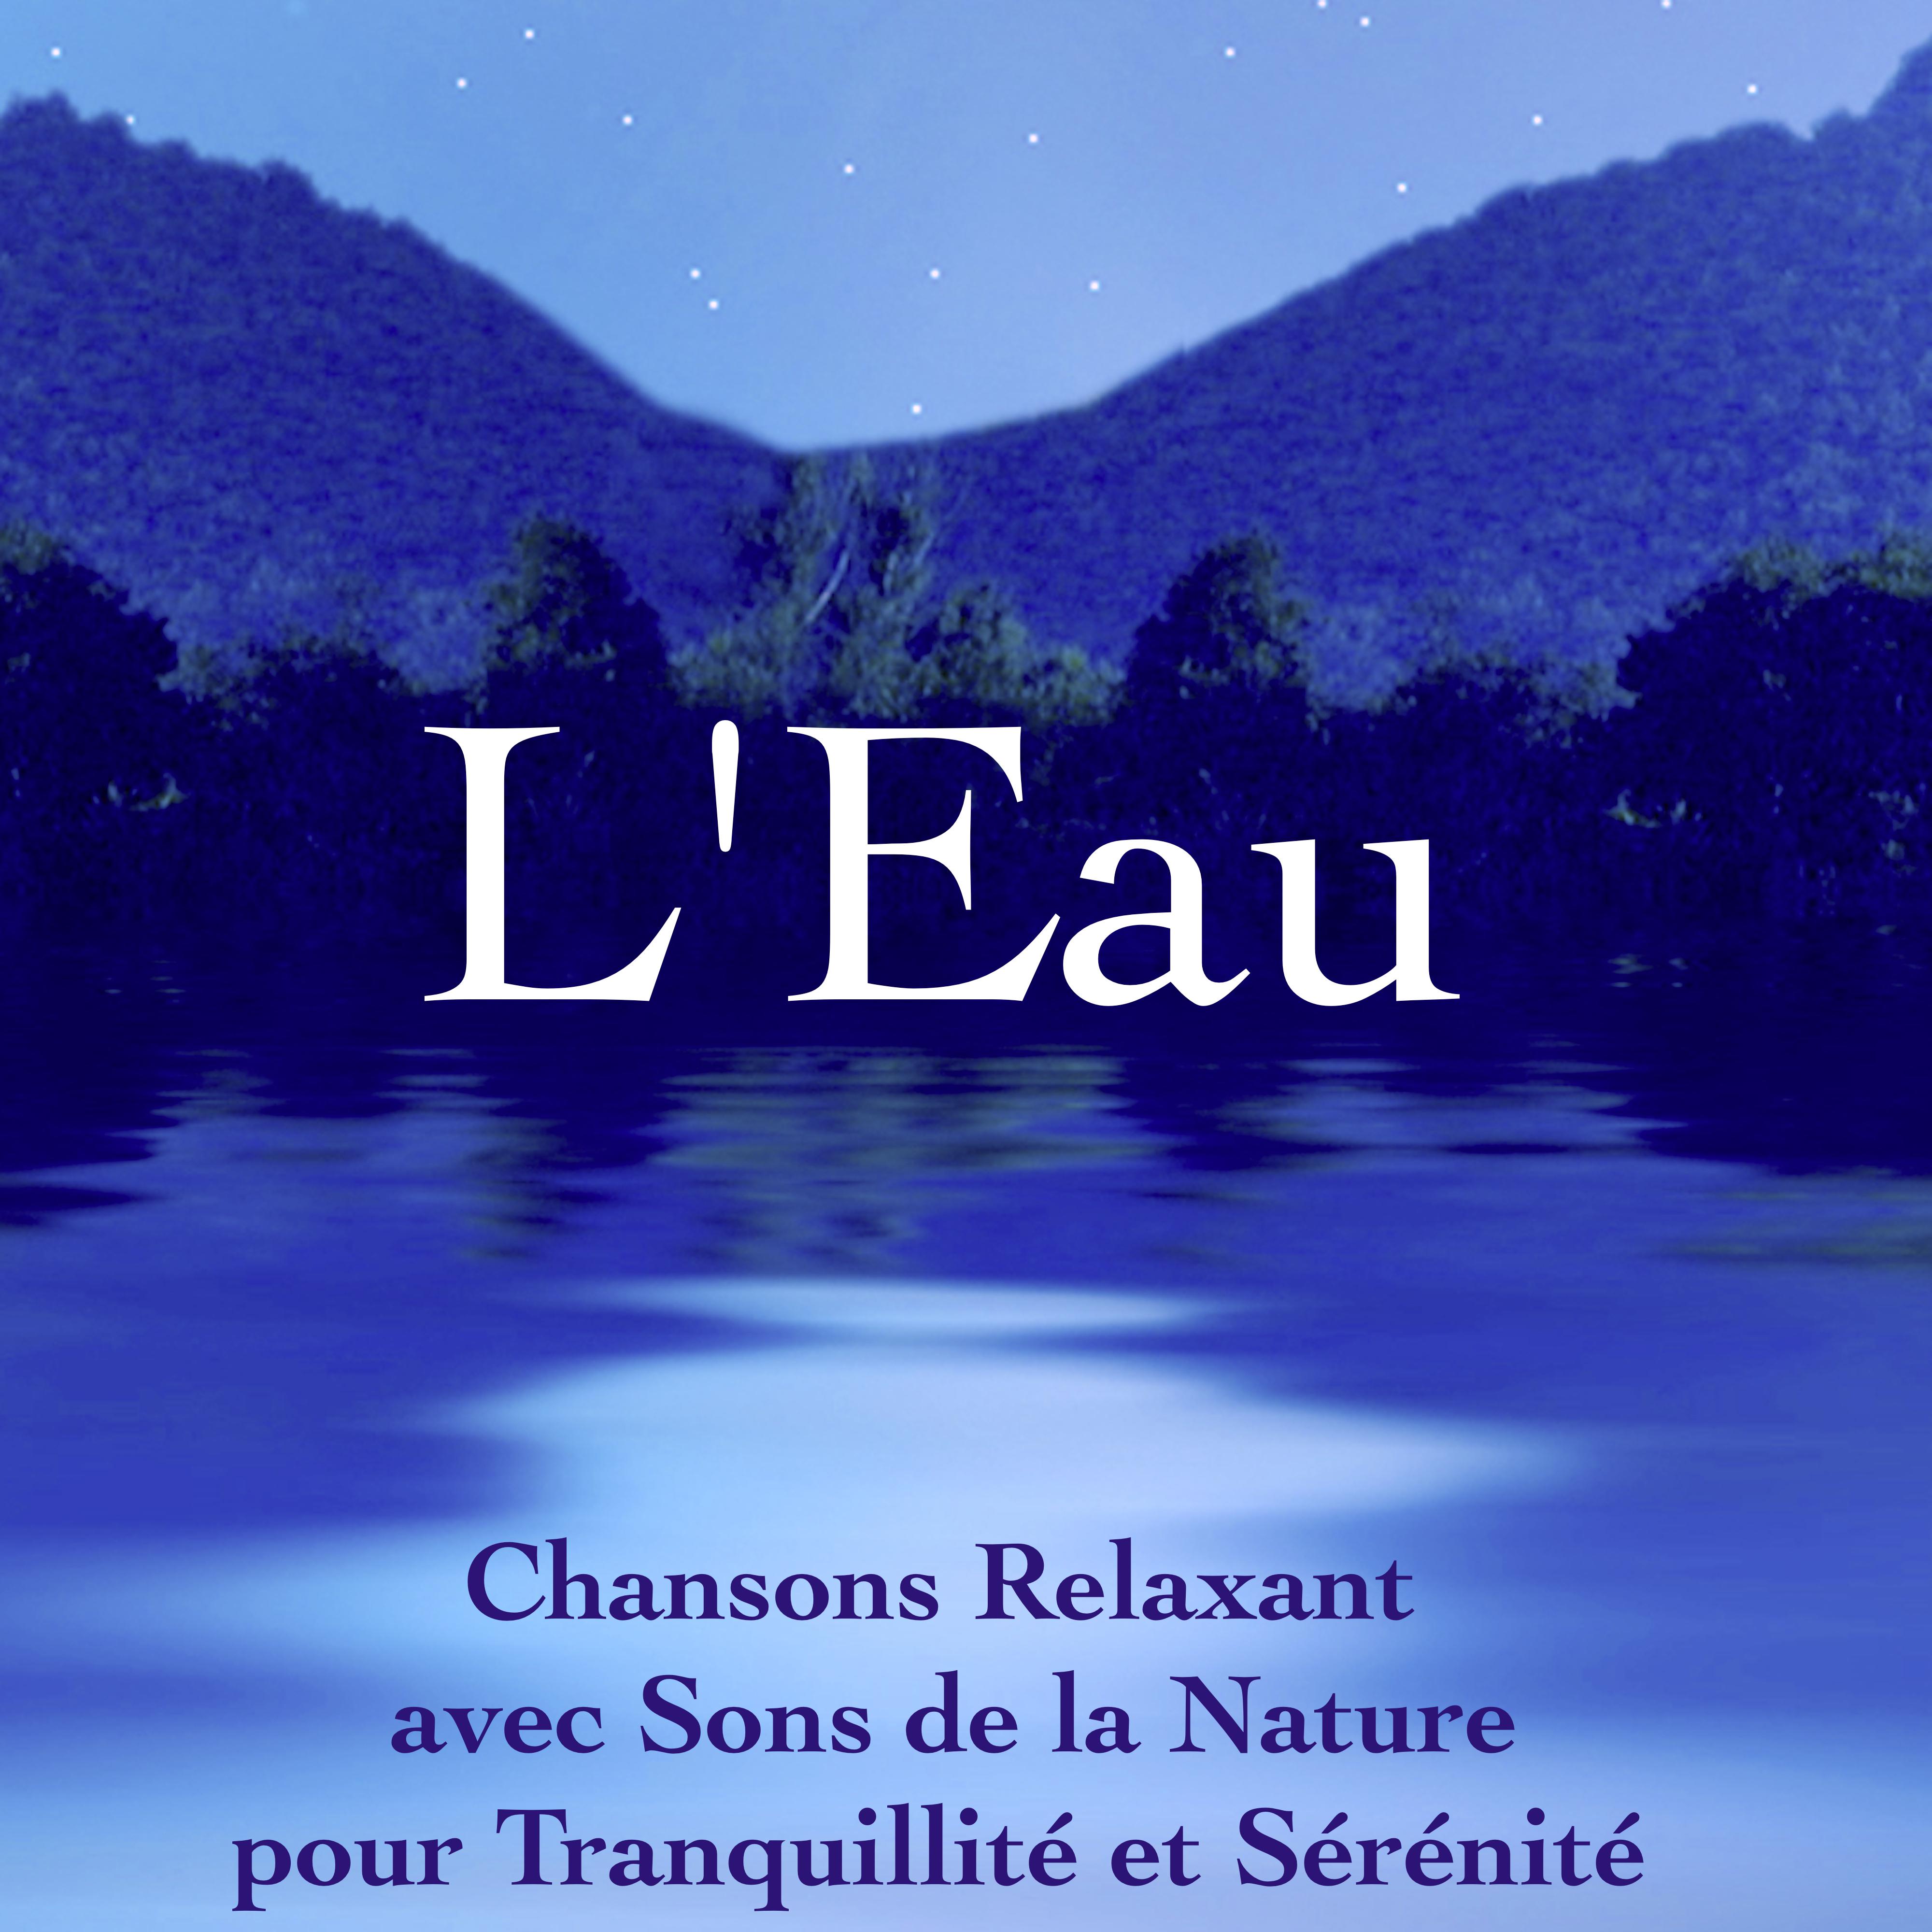 L' Eau: Chansons Relaxant avec Sons de la Nature pour Tranquillite et Se re nite, Musique Zen pour Me ditation et De tente